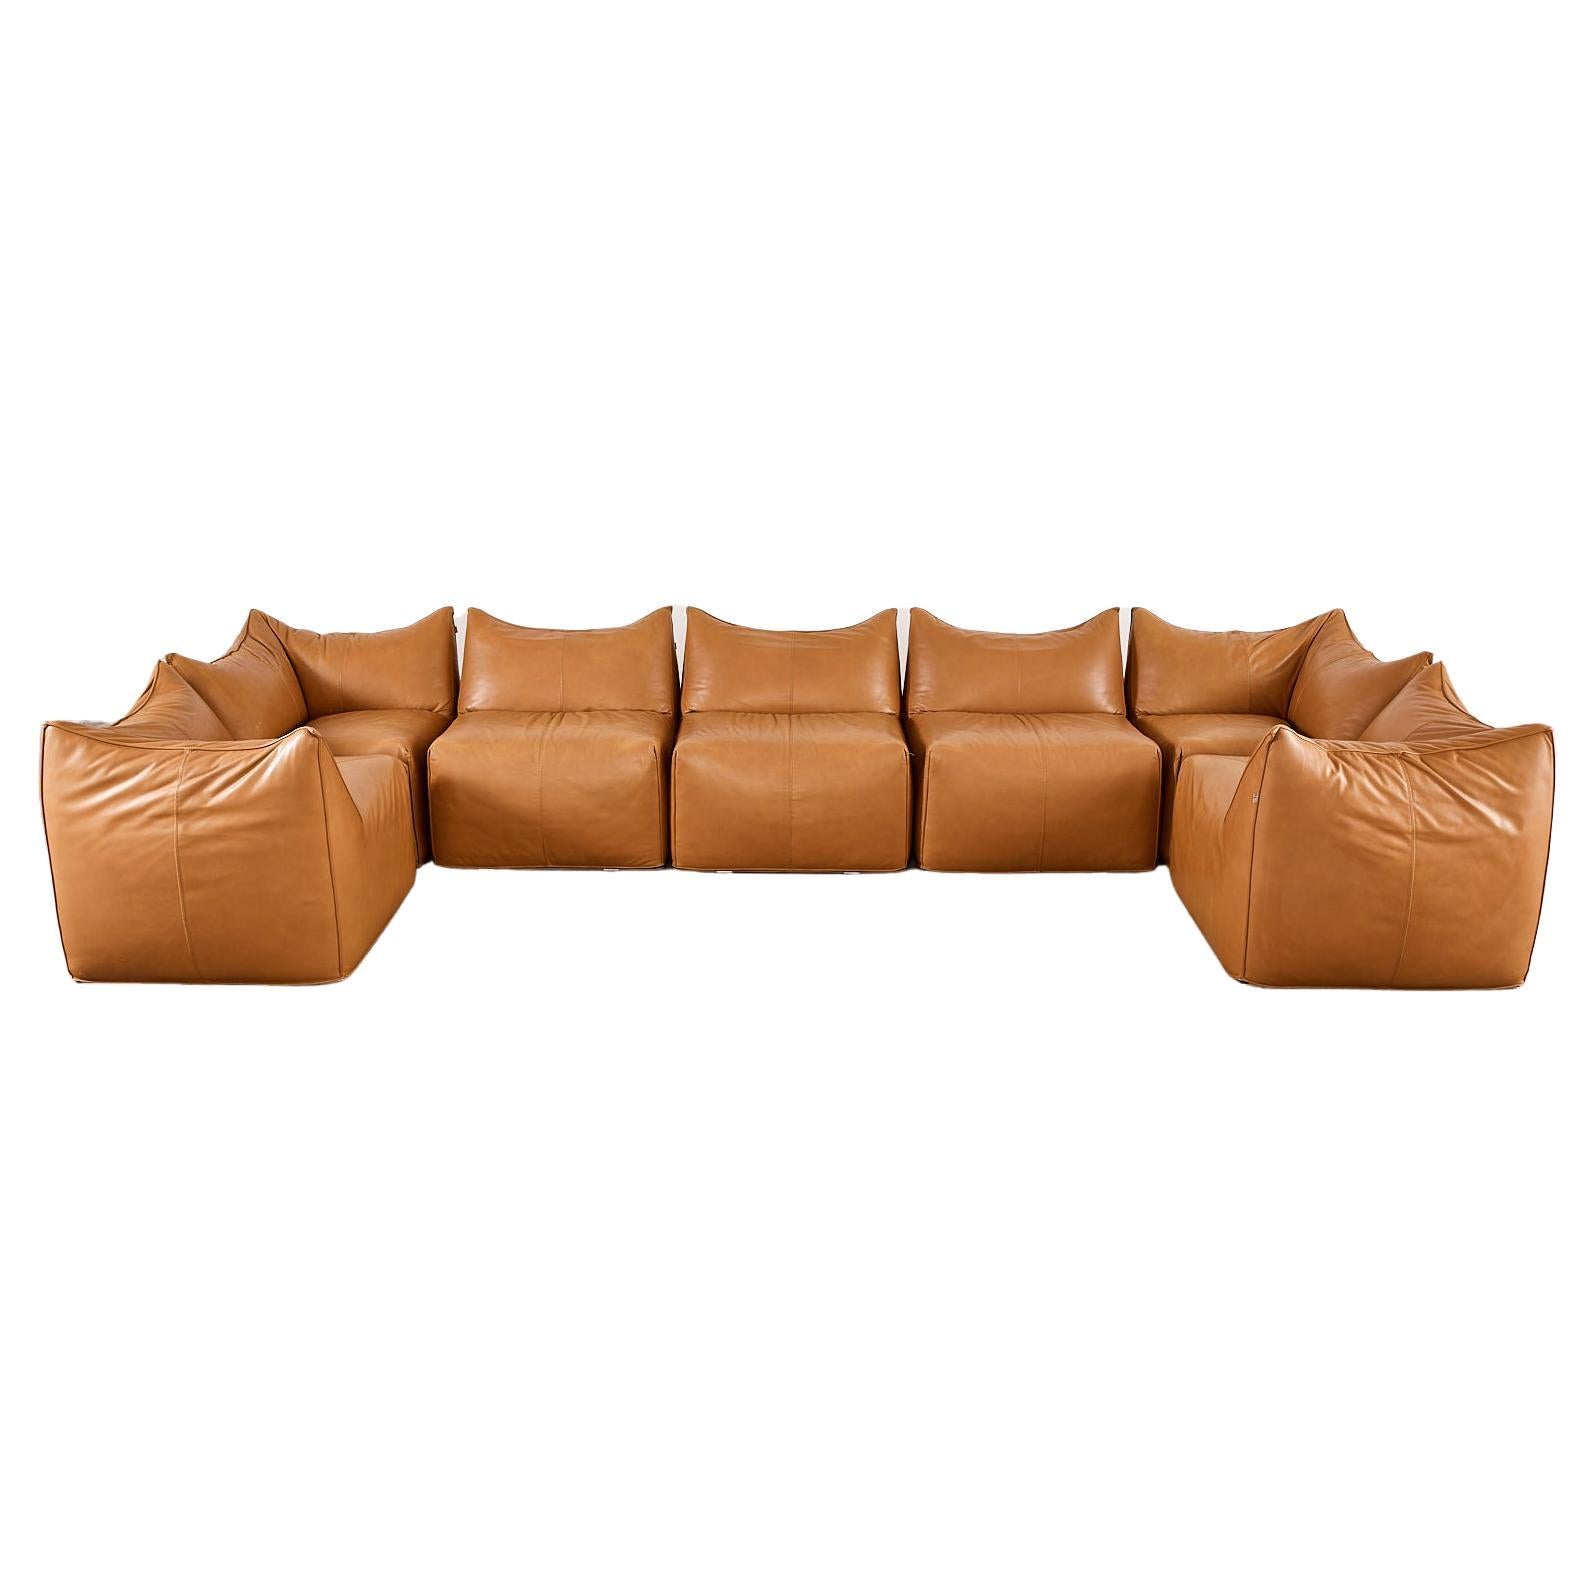 Bambole Leather Sectional Sofa by Mario Bellini for B + B Italia